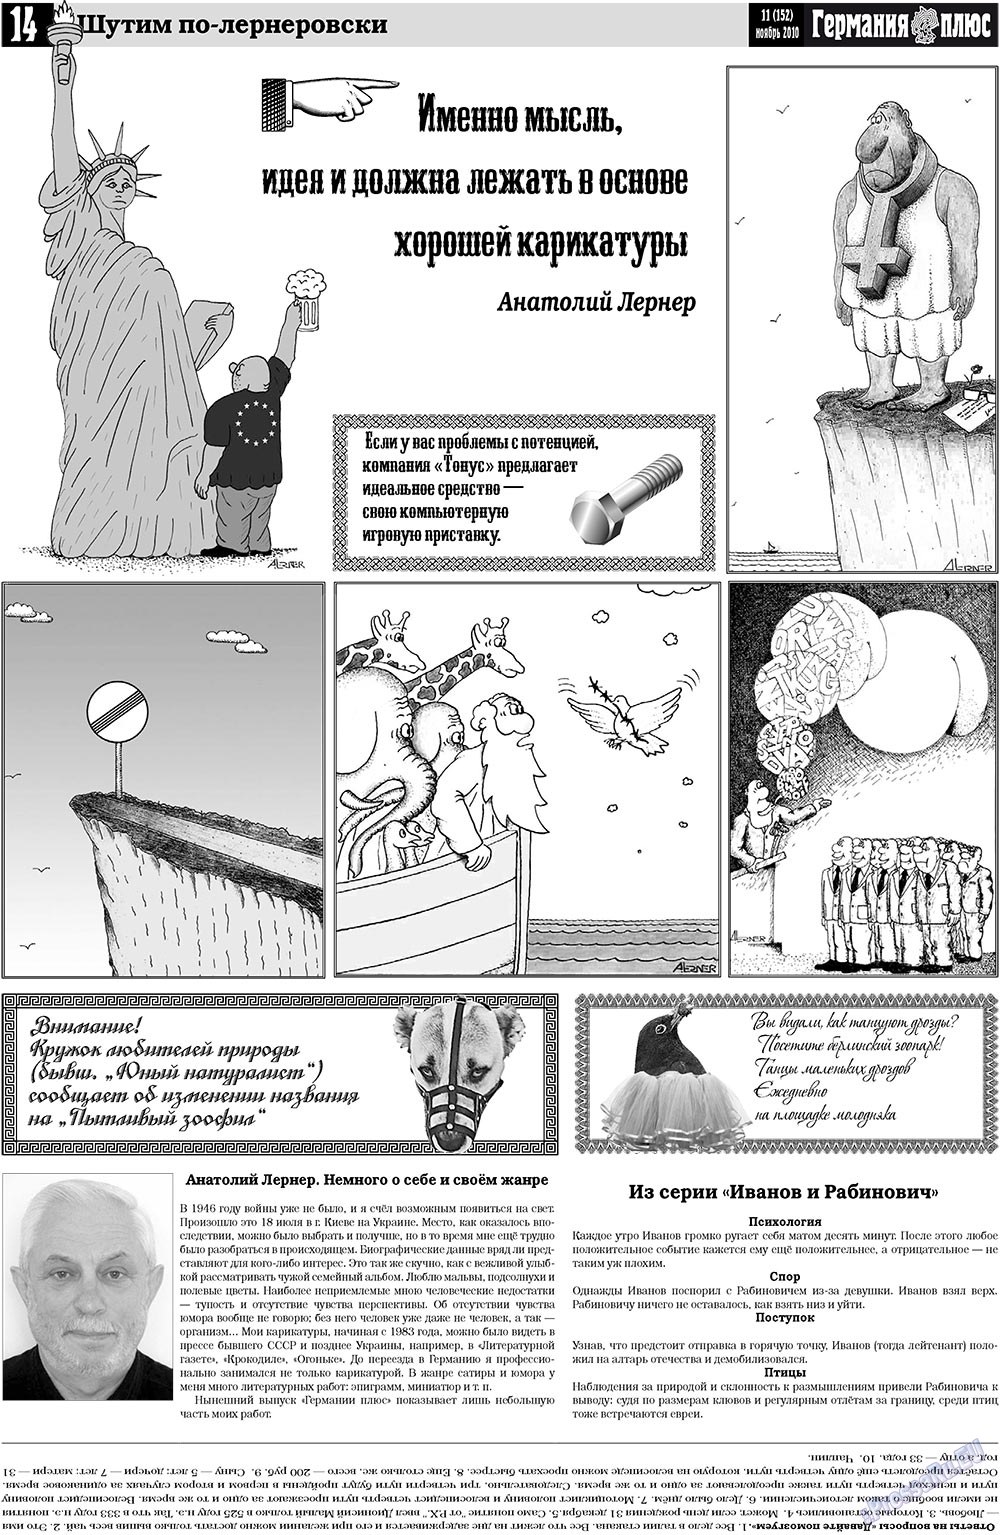 Германия плюс (газета). 2010 год, номер 11, стр. 14